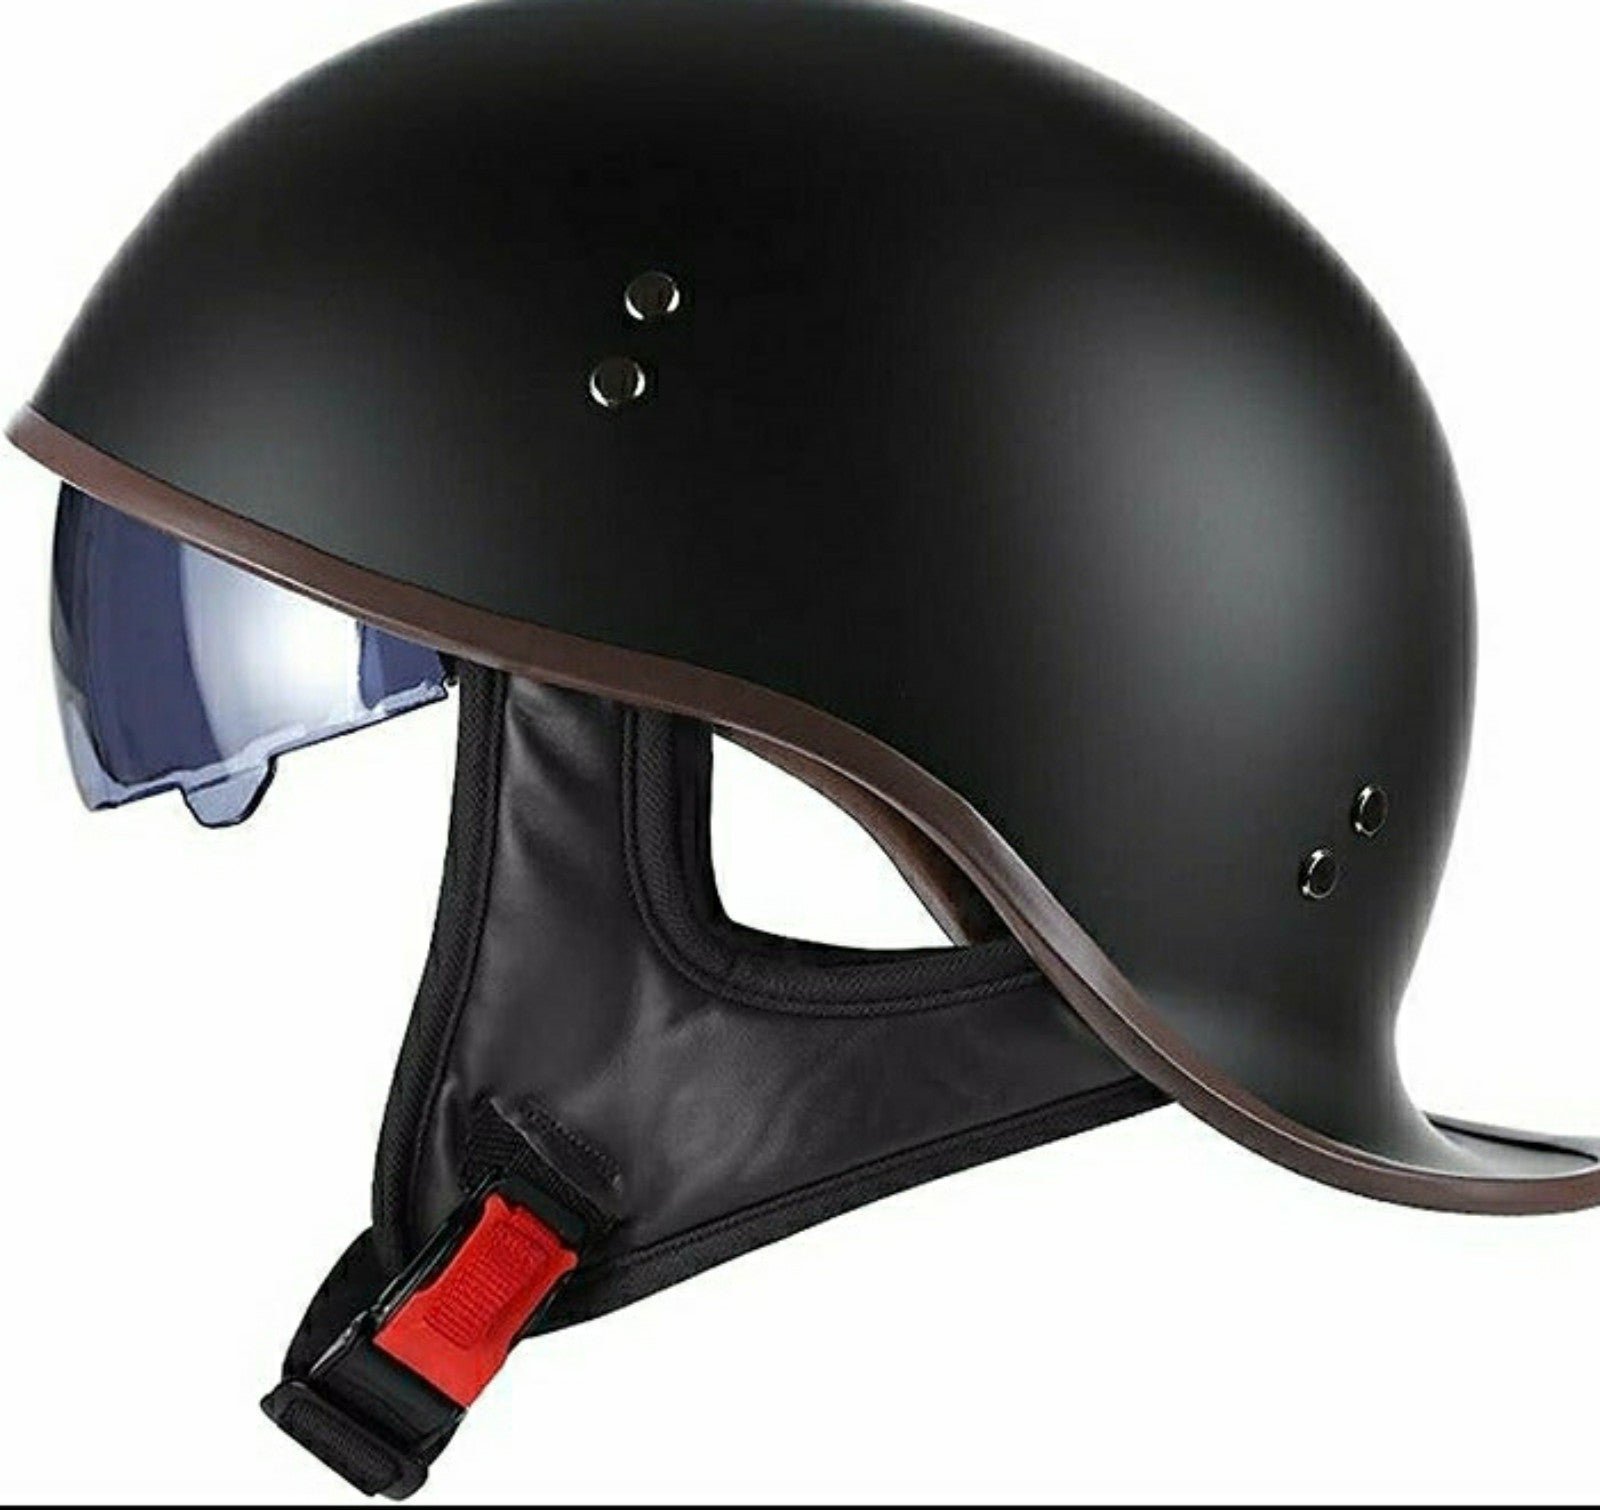 FVCNGP Motorcycle Retro Half Helmet sz med. 205UmVuD7